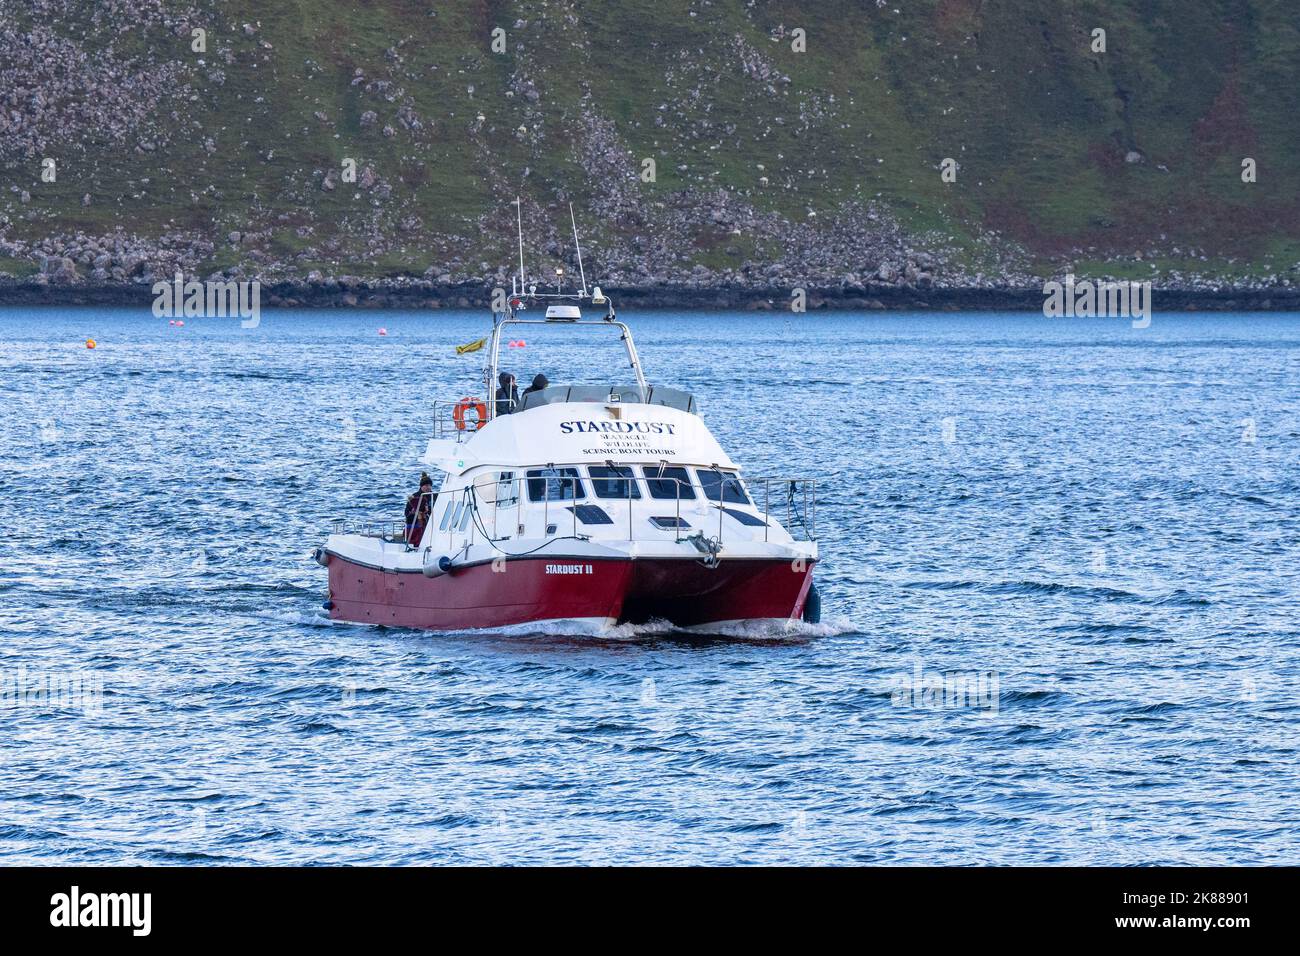 Menschen, die mit dem Boot Stardust zurück in den Hafen kommen, nachdem sie auf der Portree Isle of Skye eine Wildtierfahrt um die Berge gemacht haben Stockfoto